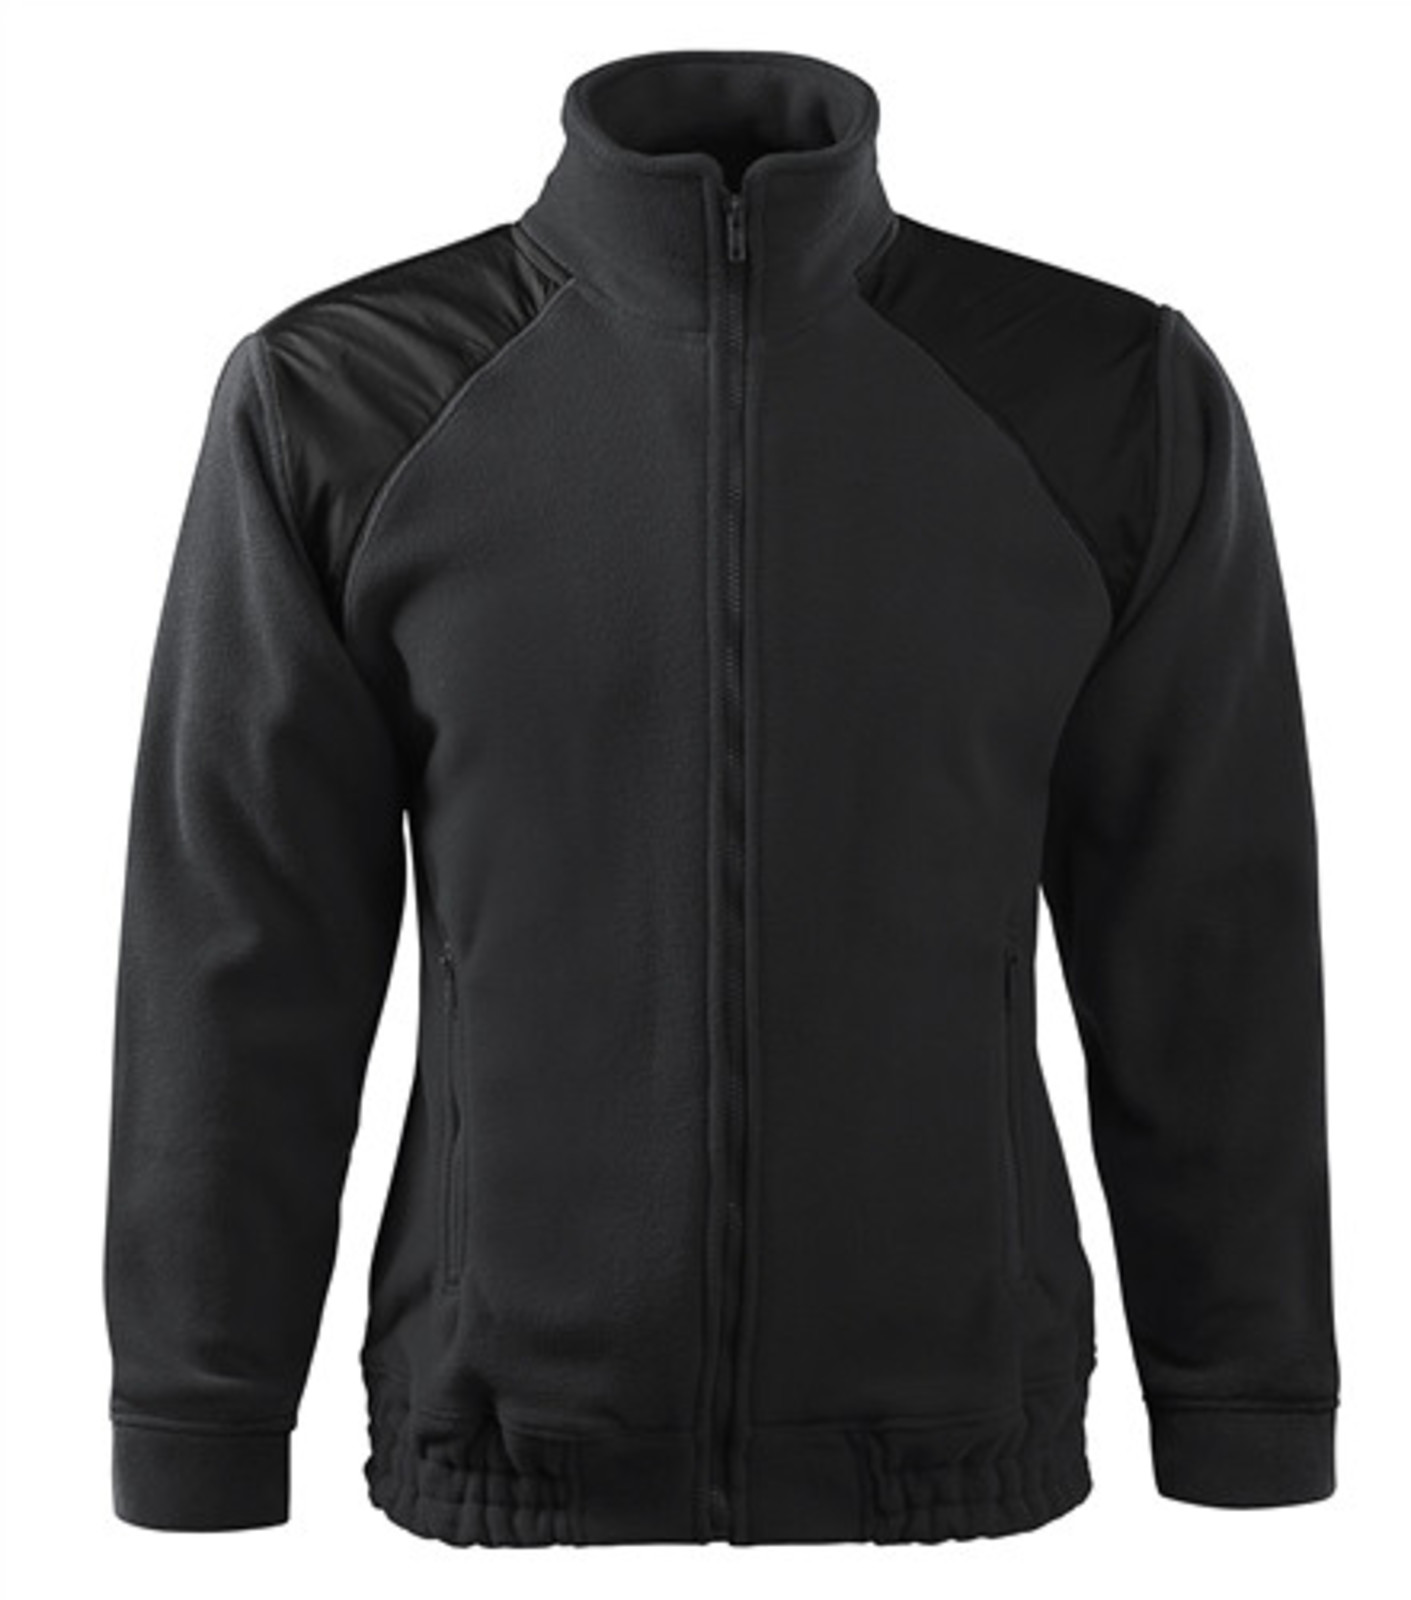 Unisex mikina Rimeck Jacket HI-Q 506 - veľkosť: S, farba: šedá ebony